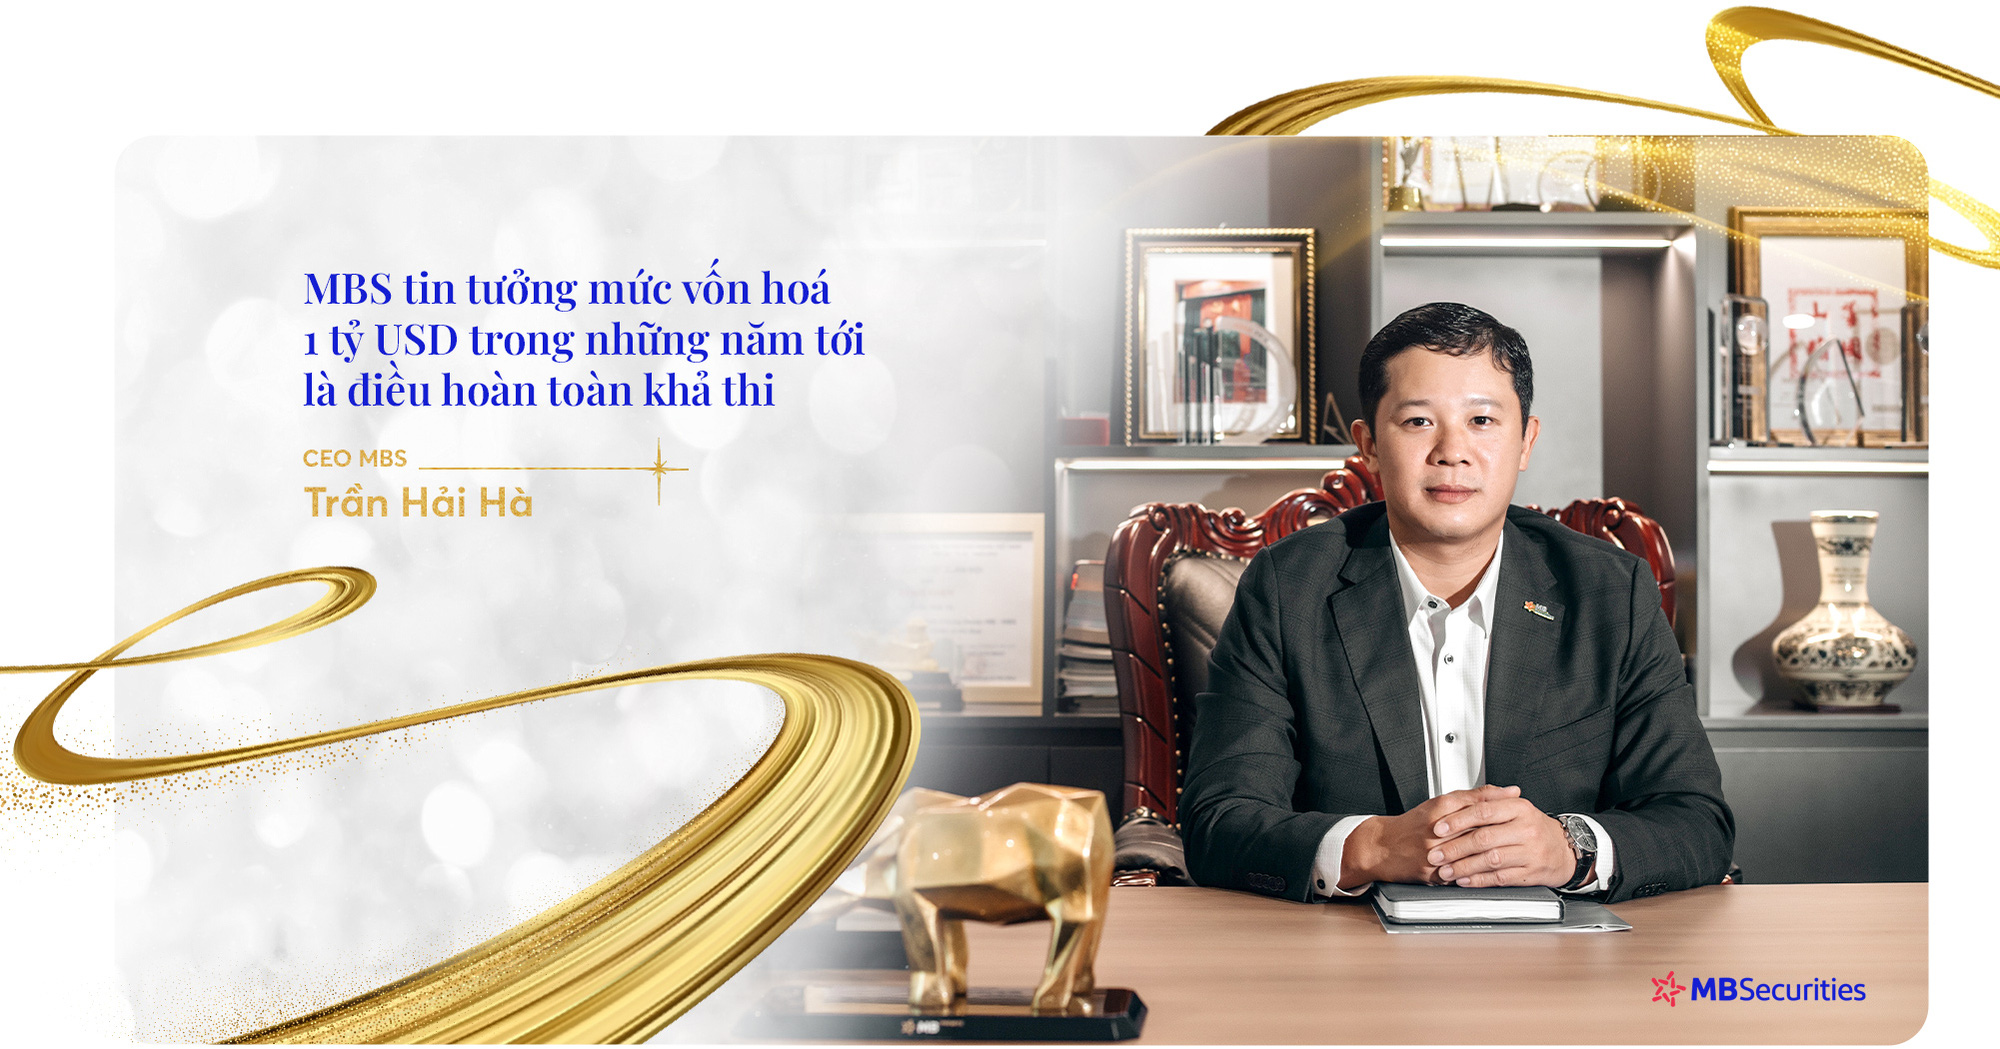 MBS tham vọng trở thành doanh nghiệp tỷ USD, ghi danh vào TOP 3 Công ty Chứng khoán Việt Nam tới năm 2026 - Ảnh 8.